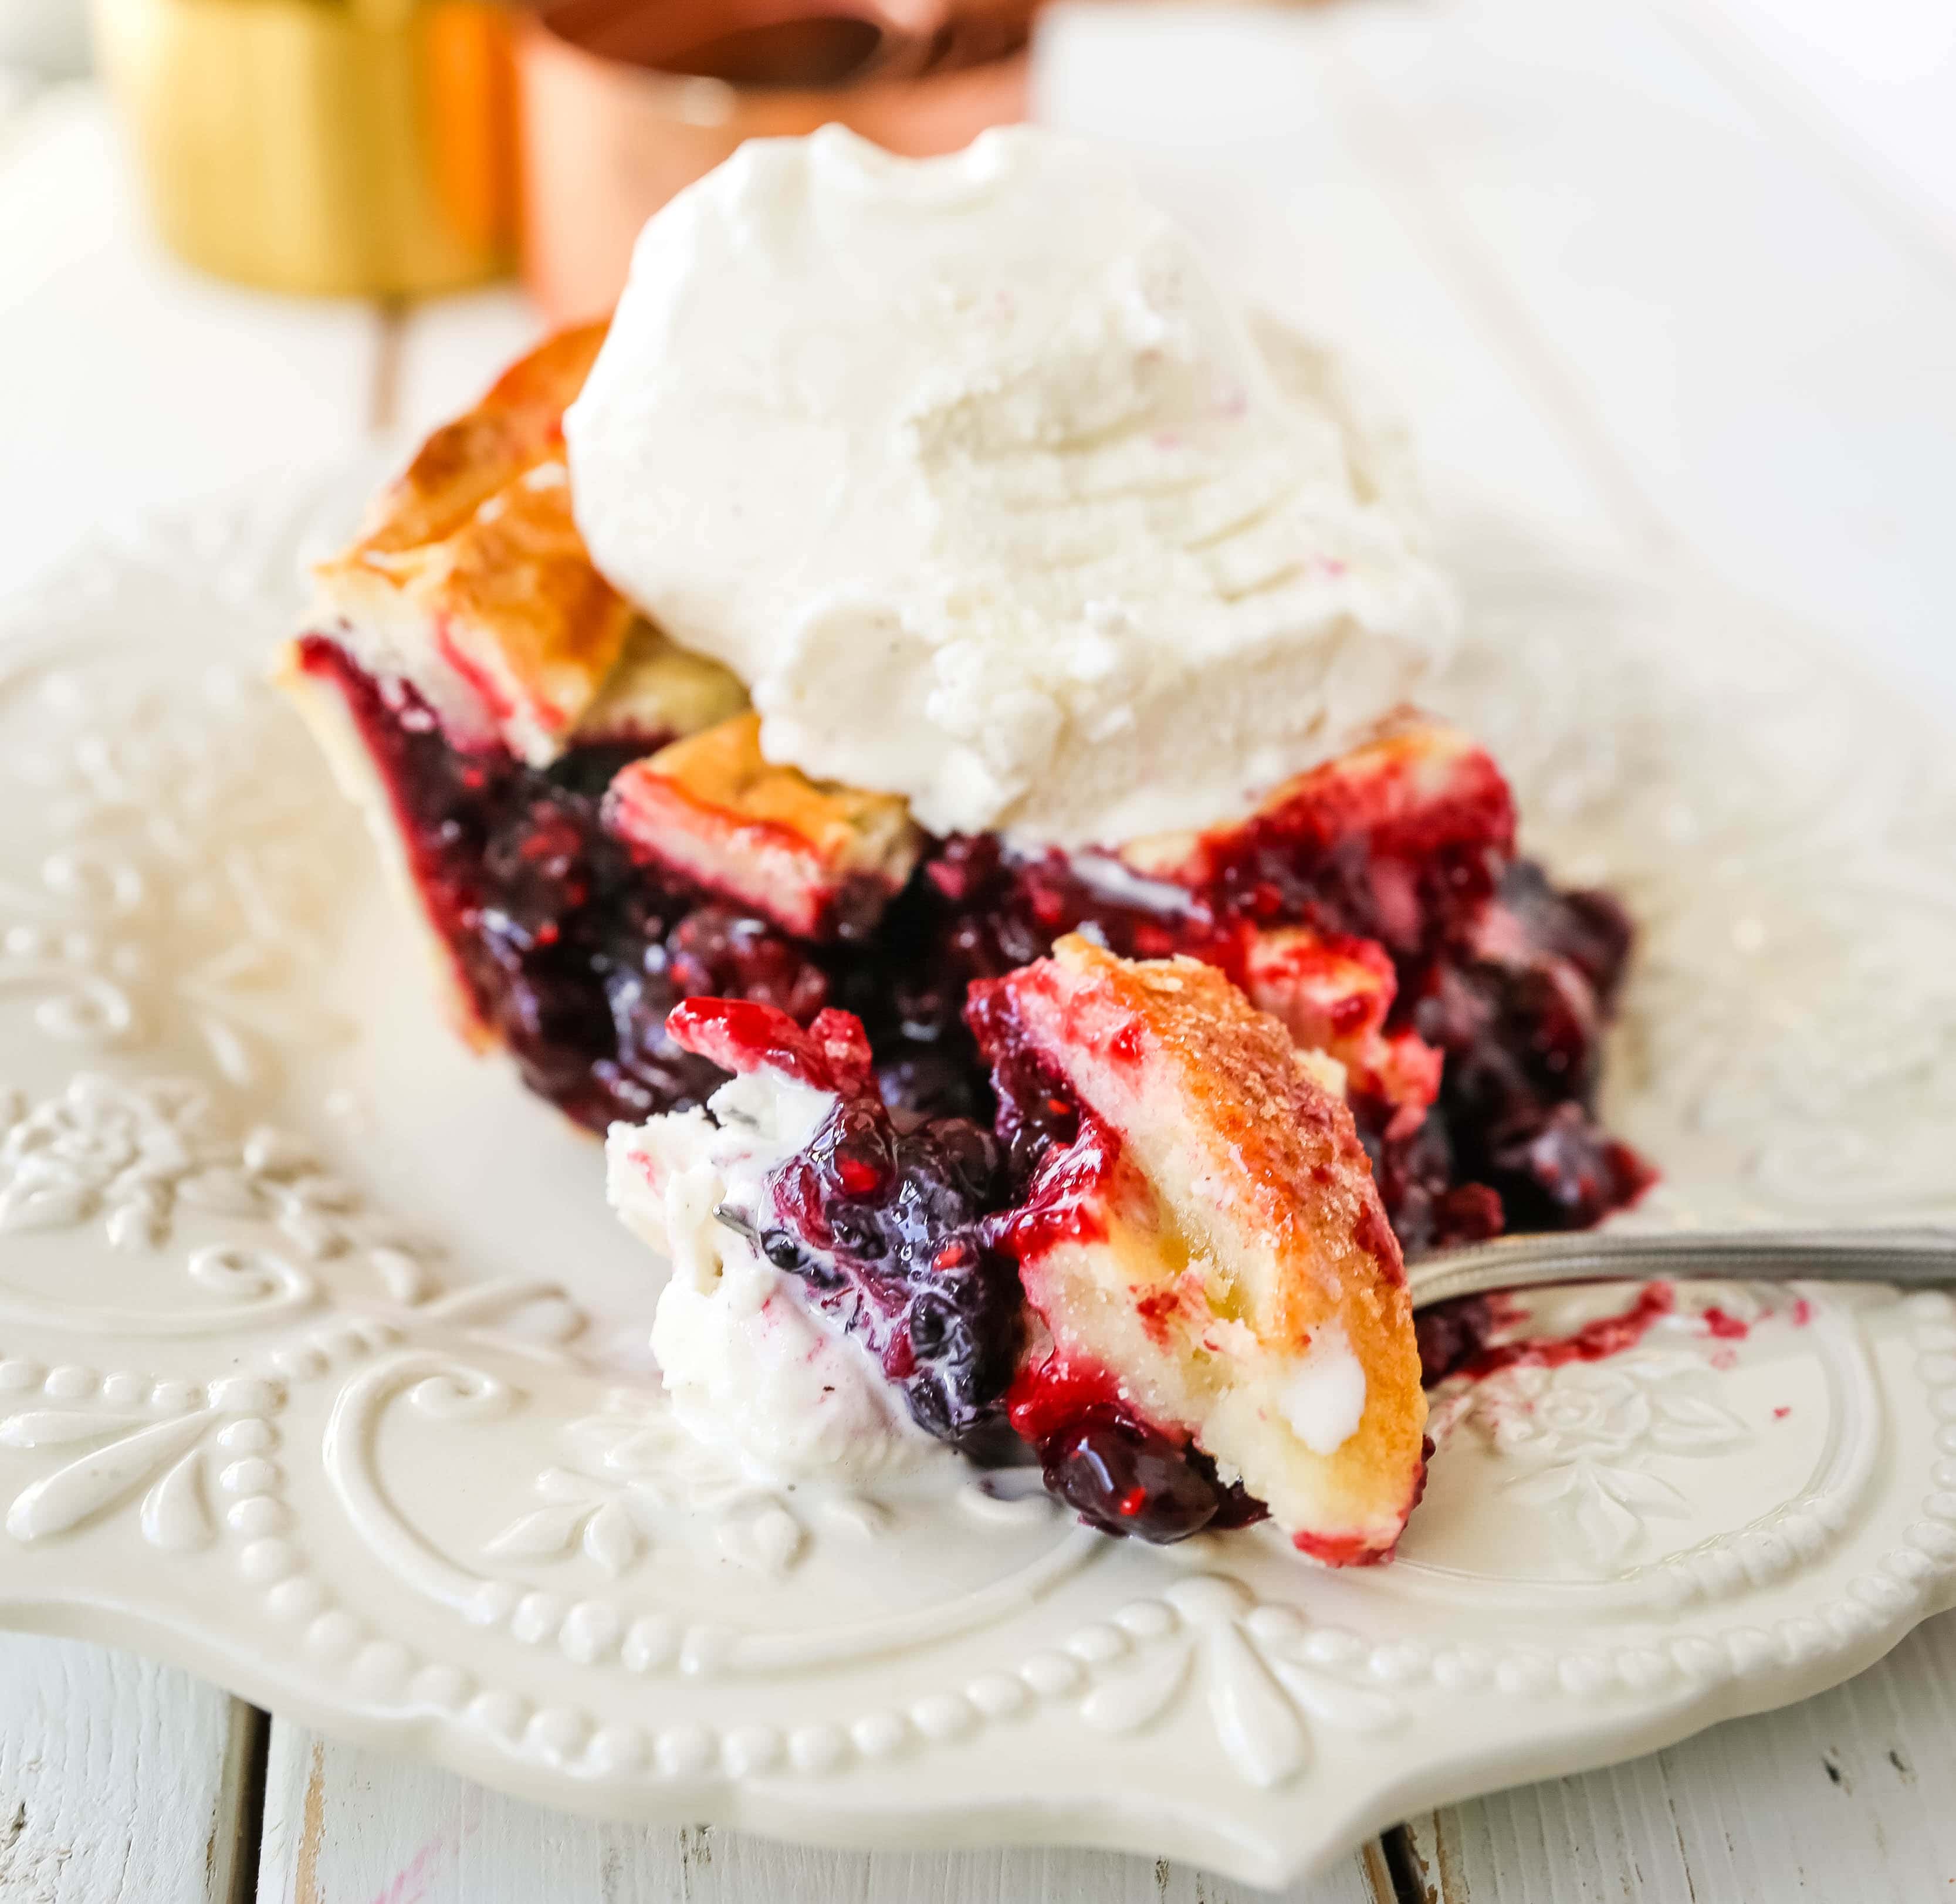 Triple Berry Pie. Das beste hausgemachte Beerenkuchenrezept mit einer buttrigen Kuchenkruste. Toppen Sie es mit Vanilleeis und Sie haben das perfekte Beeren-Dessert! Das beste Beerenkuchen-Rezept. www.modernhoney.com #berrypie #pie #berries #tripleberrypie #thanksgiving